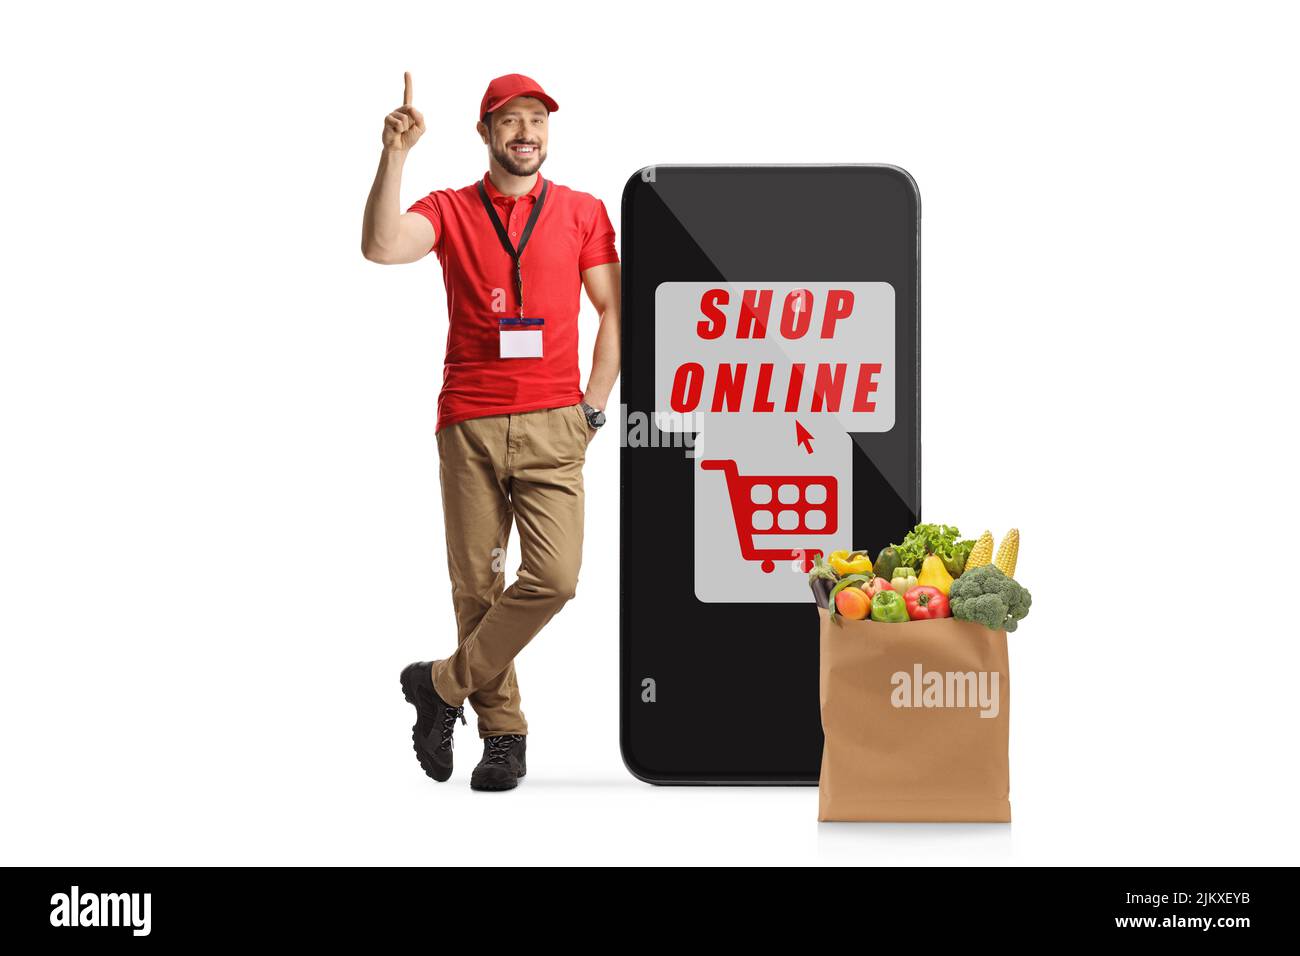 Sonriente asistente de tienda apoyado en un smartphone con tienda de texto en línea y apuntando aislado sobre fondo blanco Foto de stock